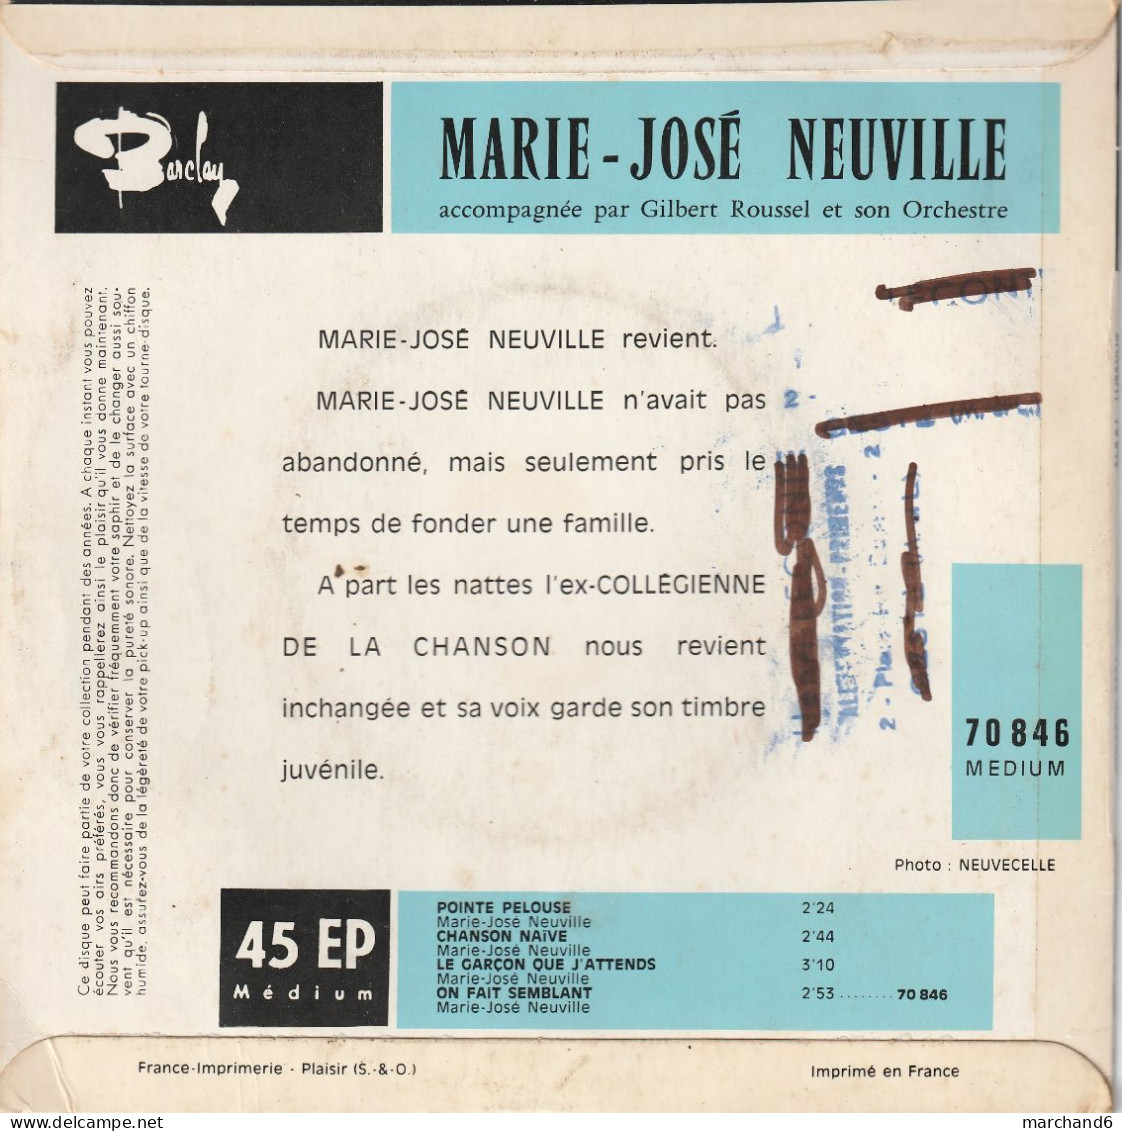 Marie José Neuville Barclay 70846 Le Garçon Que J'attends/chanson Naive/pointe Pelouse/on Fait Semblant - Sonstige - Franz. Chansons